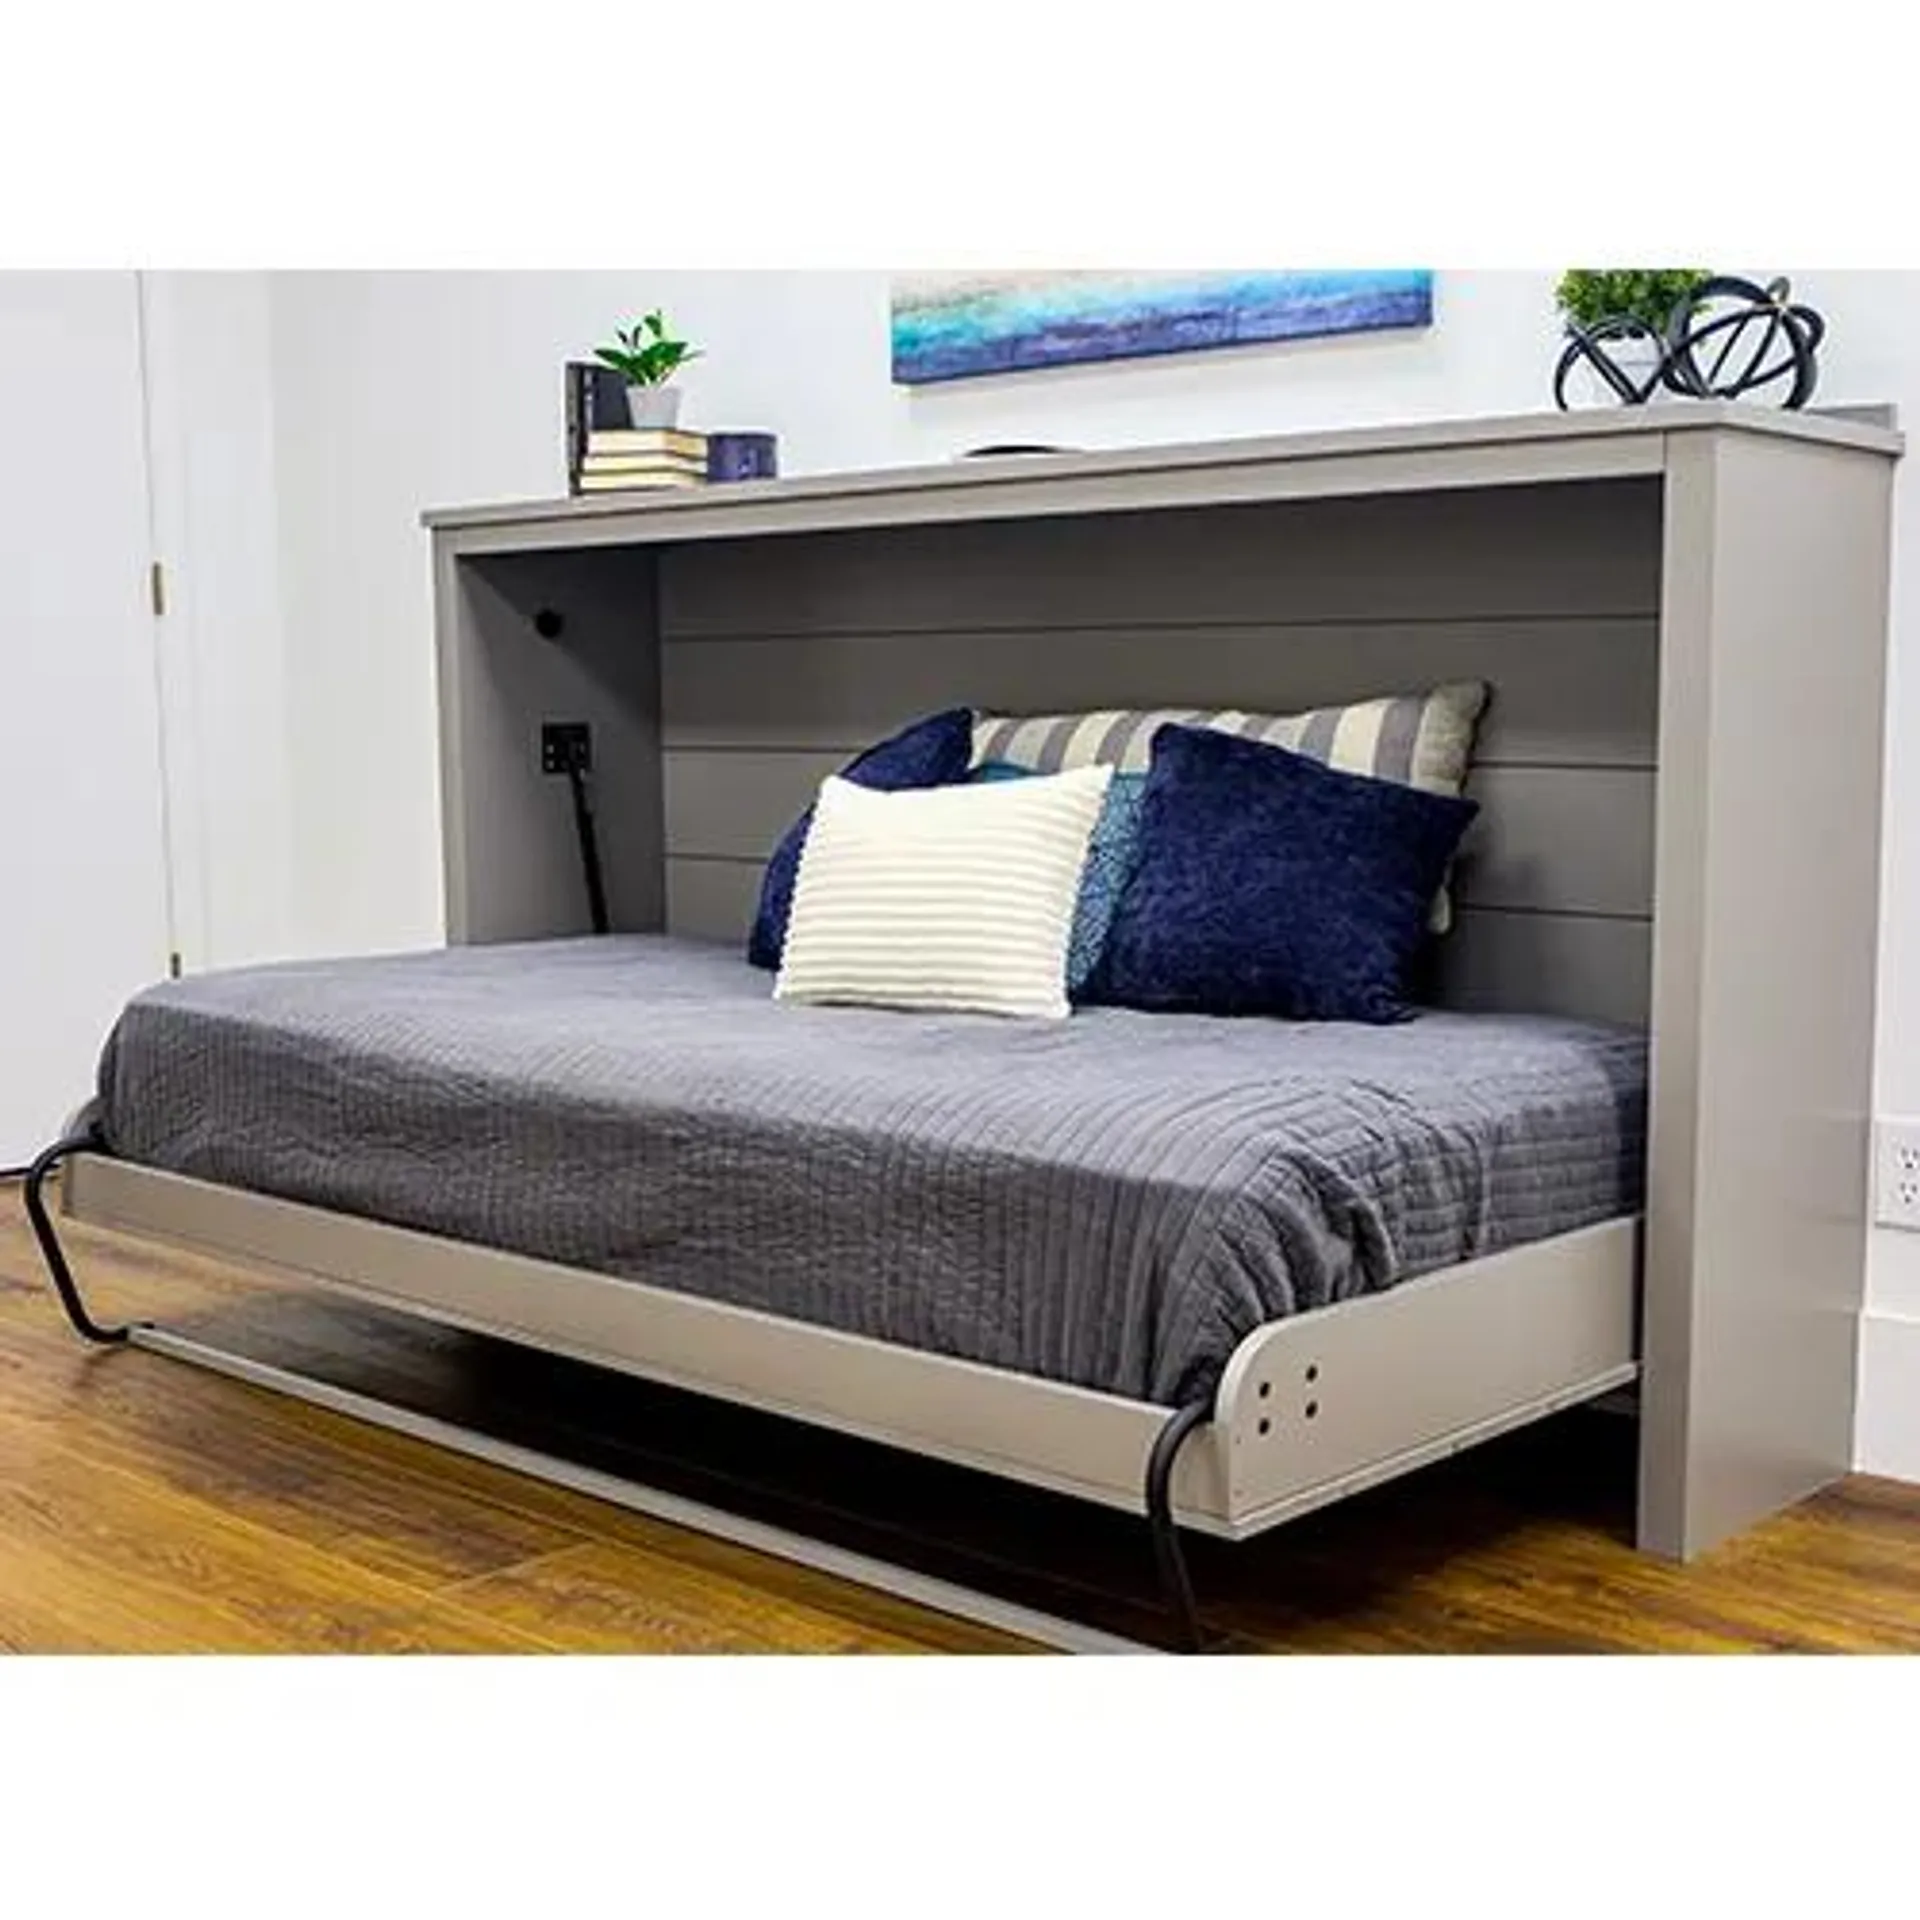 Create-A-Bed Queen Horizontal Adjustable Deluxe Murphy Bed Kit